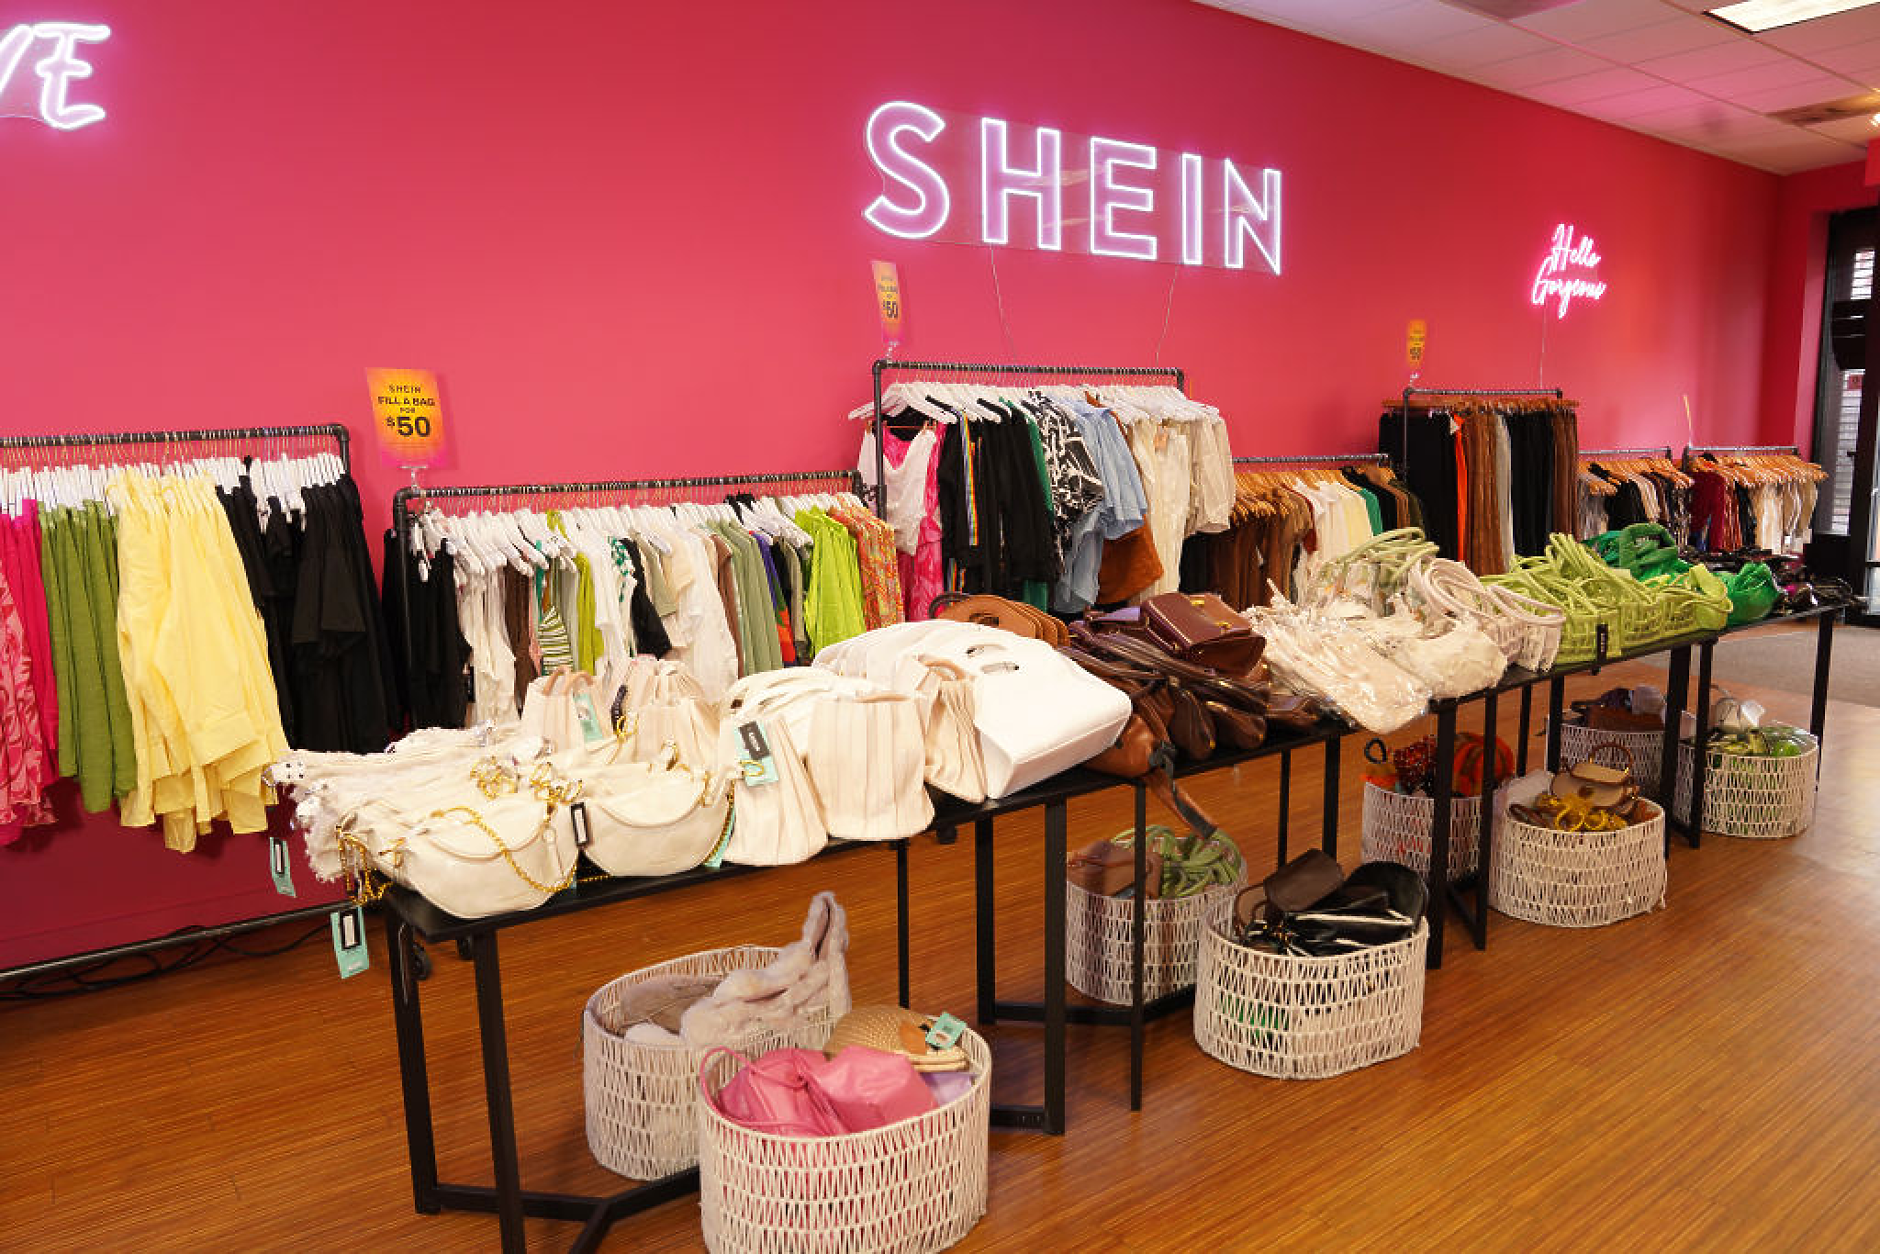 Shein иска да надмине комбинираните годишни продажби на H&M и Zara през 2025 г.